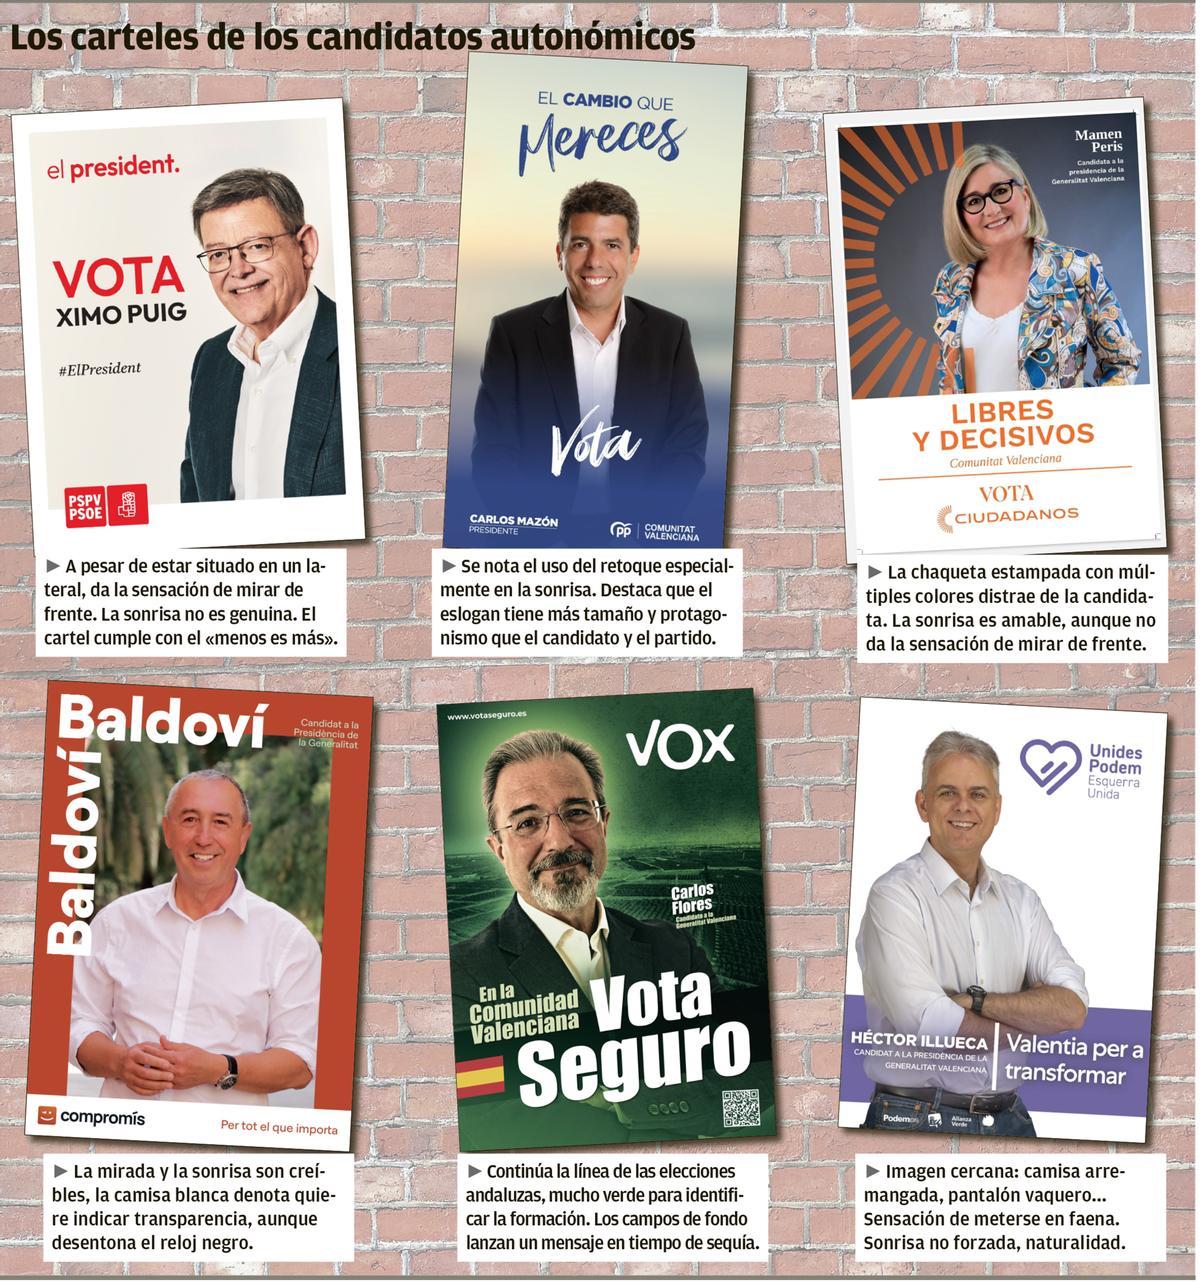 Los carteles de los candidatos autonómicos.